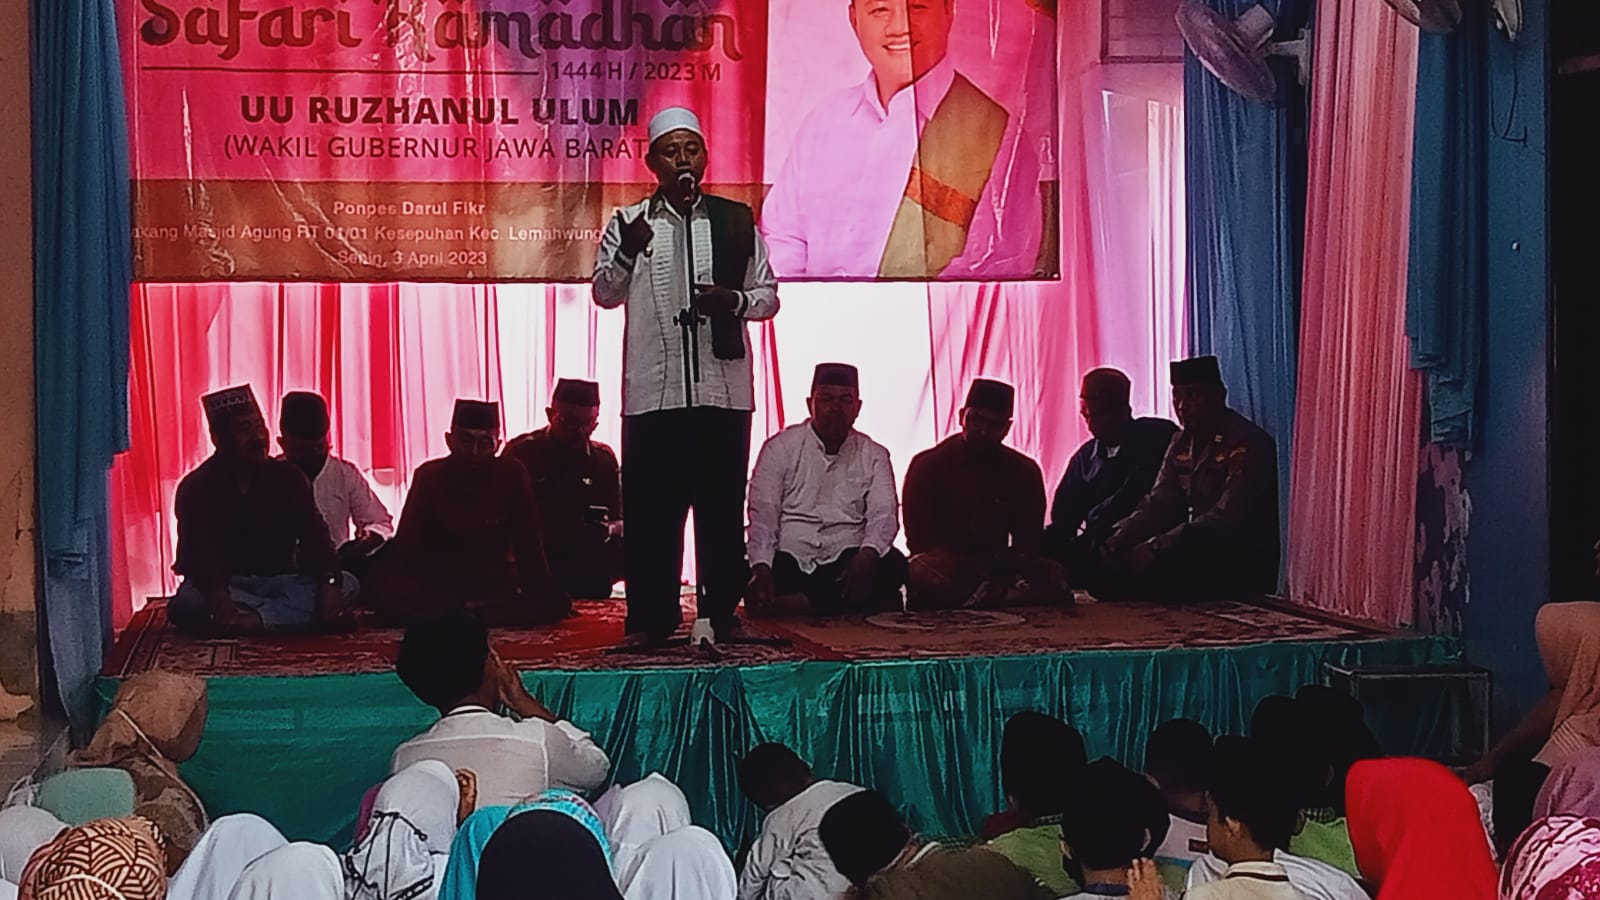 Saat Safari Ramadhan di Kota Cirebon, Wakil Gubernur Jawa Barat Sampaikan Hal Ini…